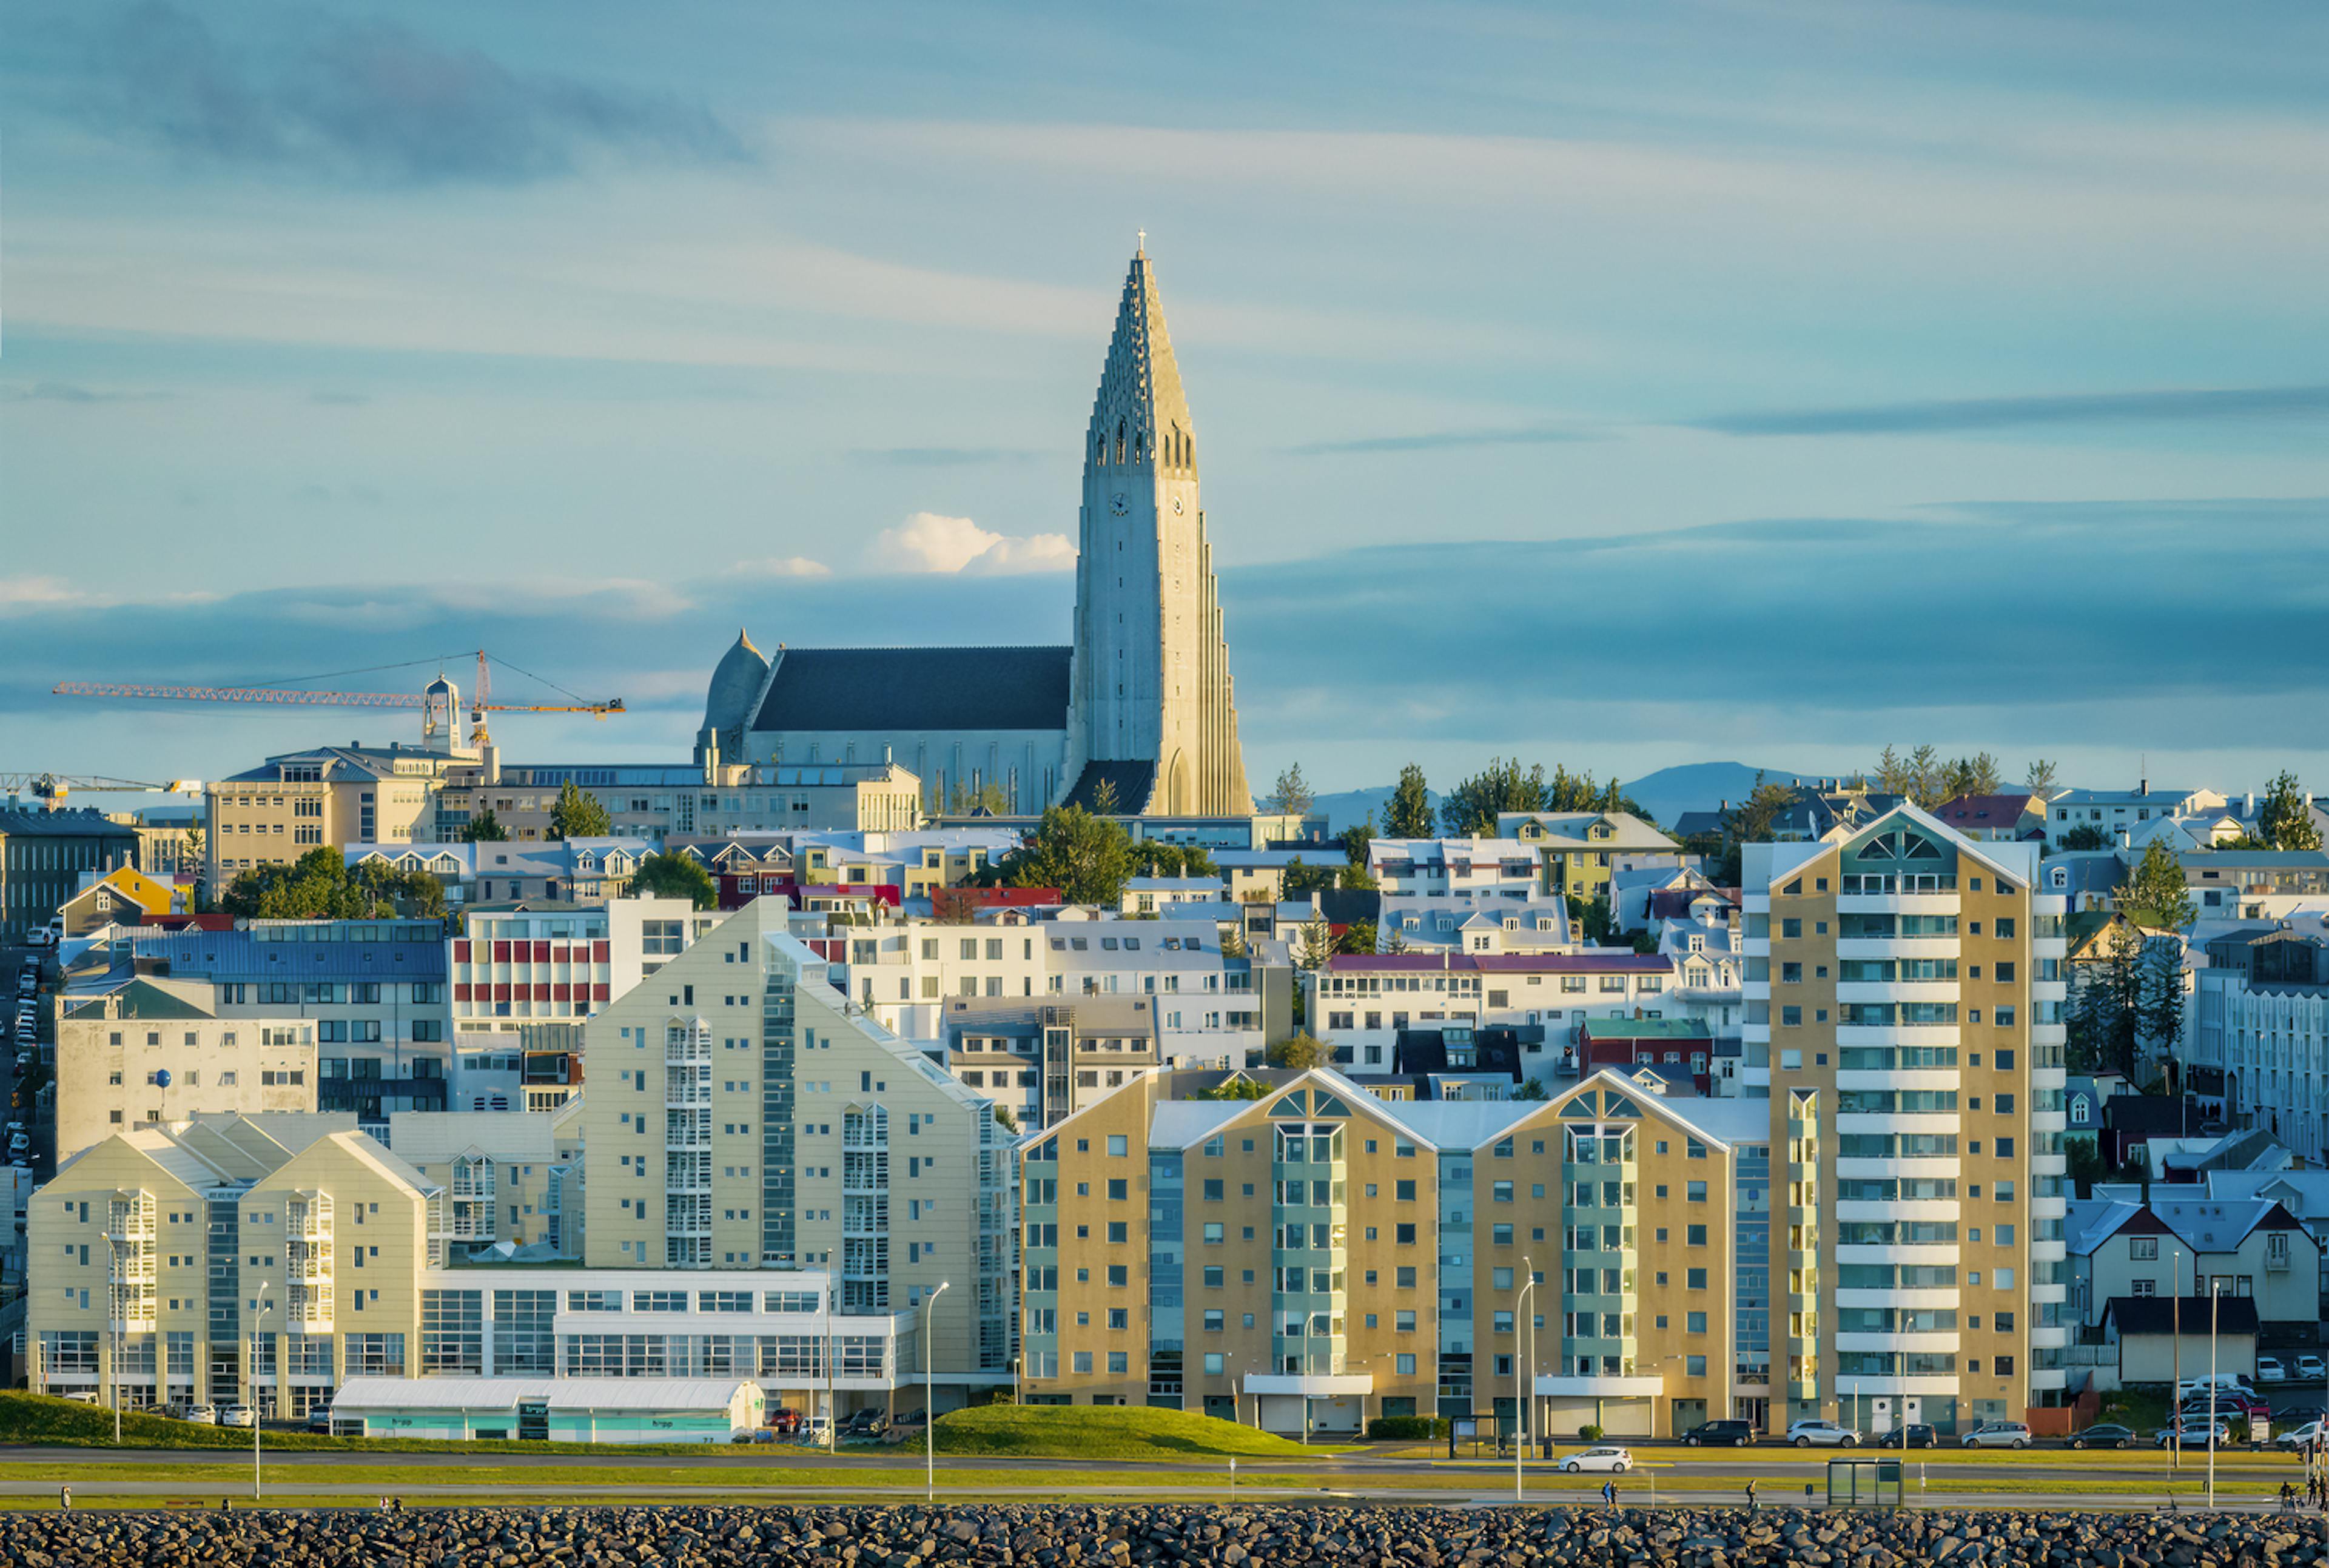 Skyline of Reykjavik on a clear day